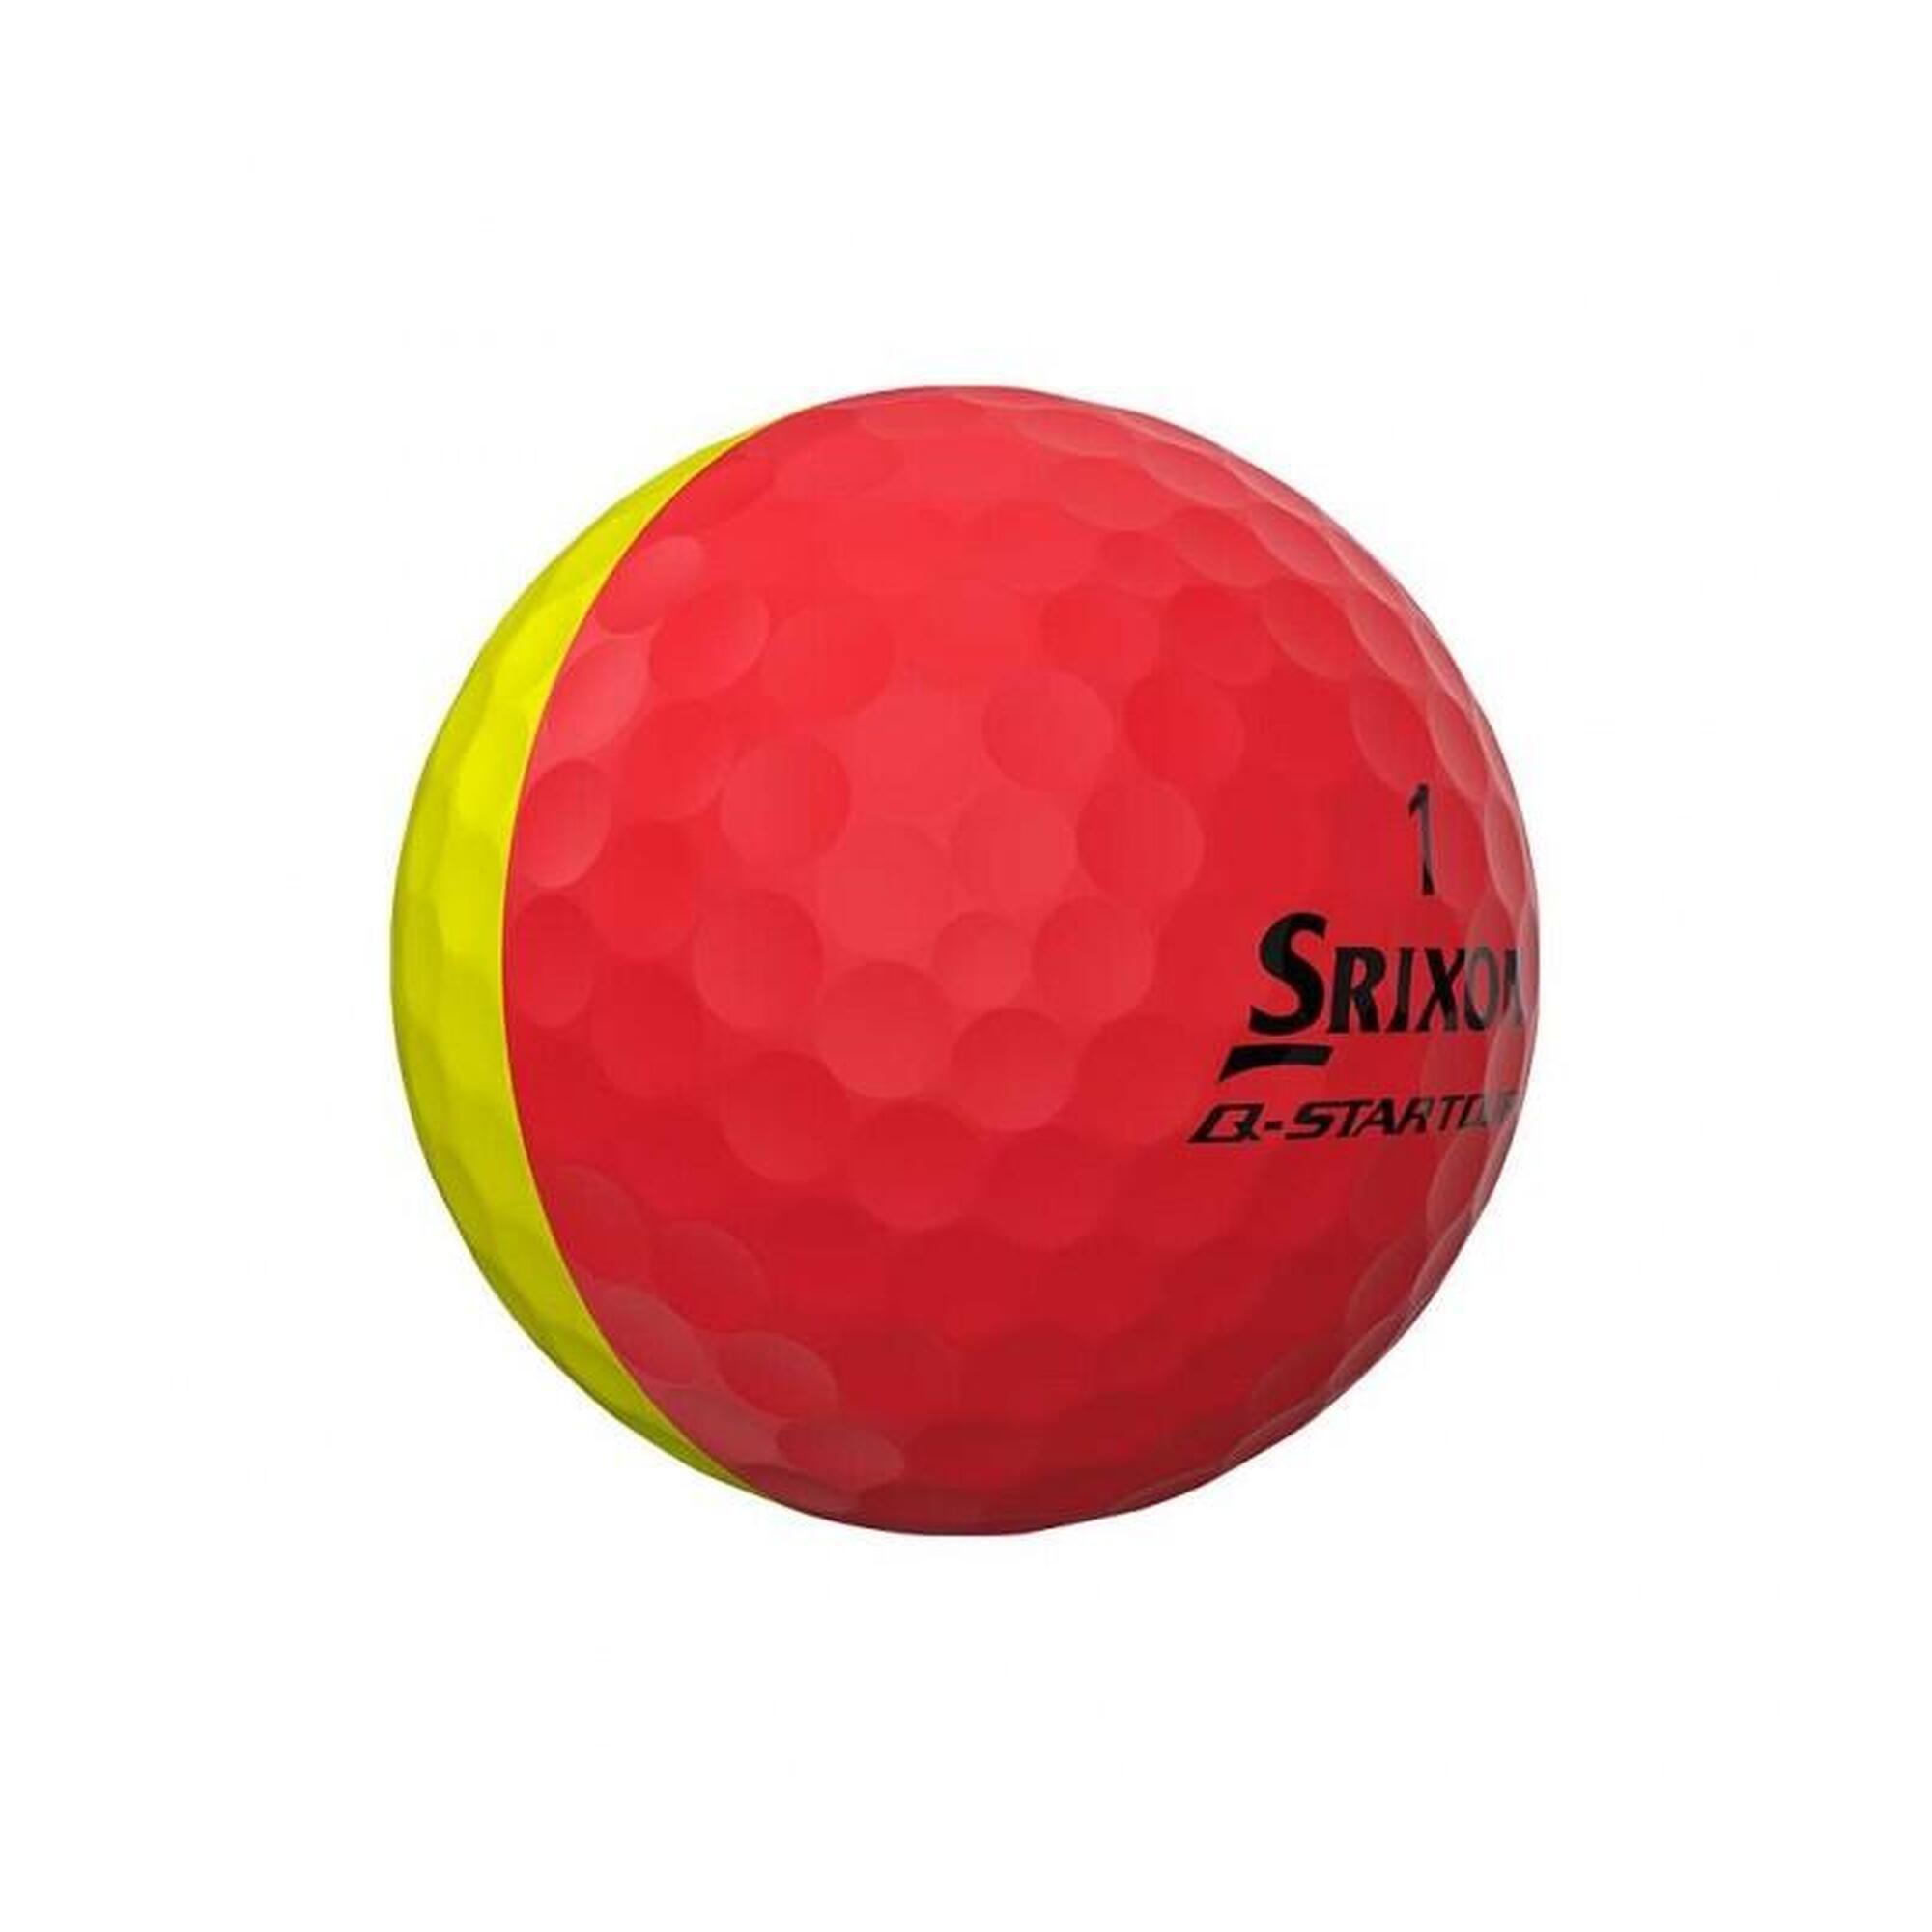 Caja de 12 pelotas de golf Srixon Q-Star Tour DIVIDE